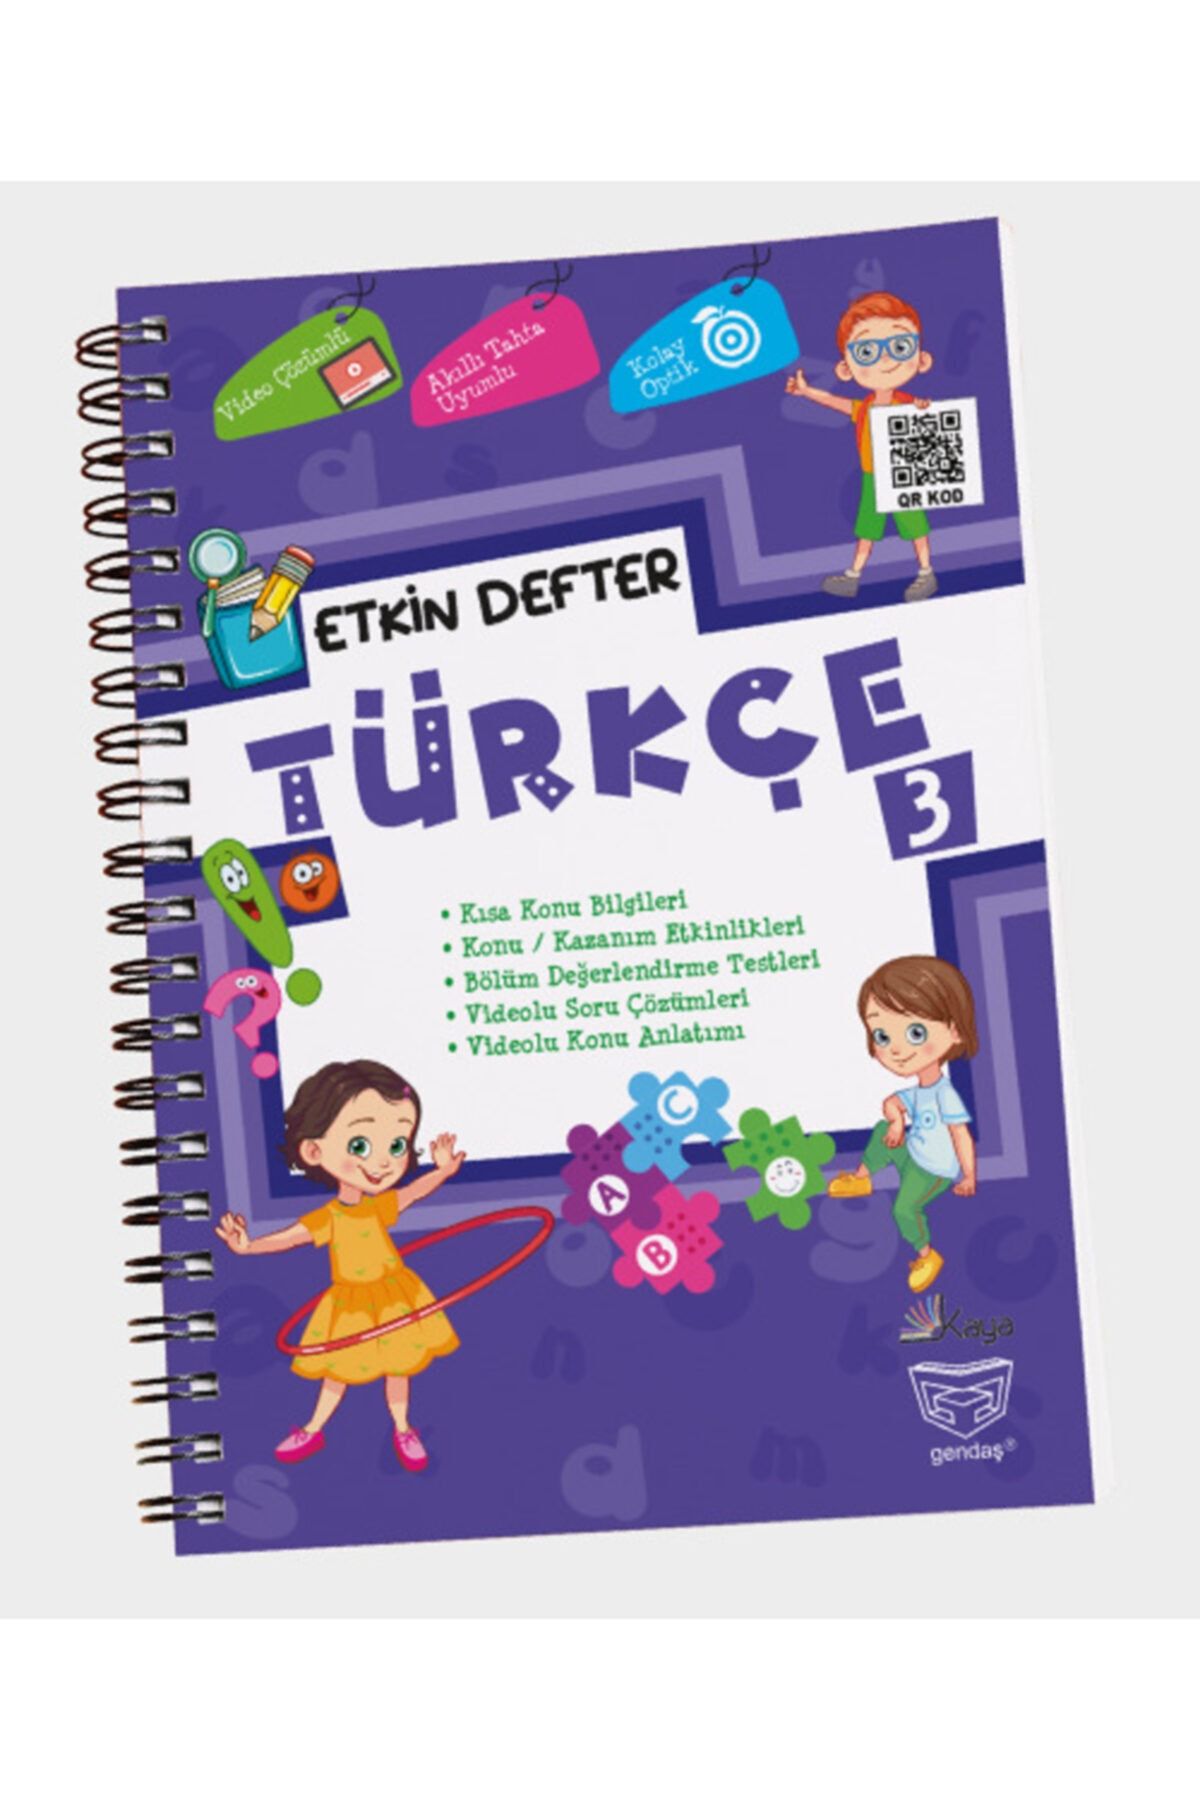 DIGERUI Etkin Defter Türkçe 3.sınıf Gendaş Yayınları